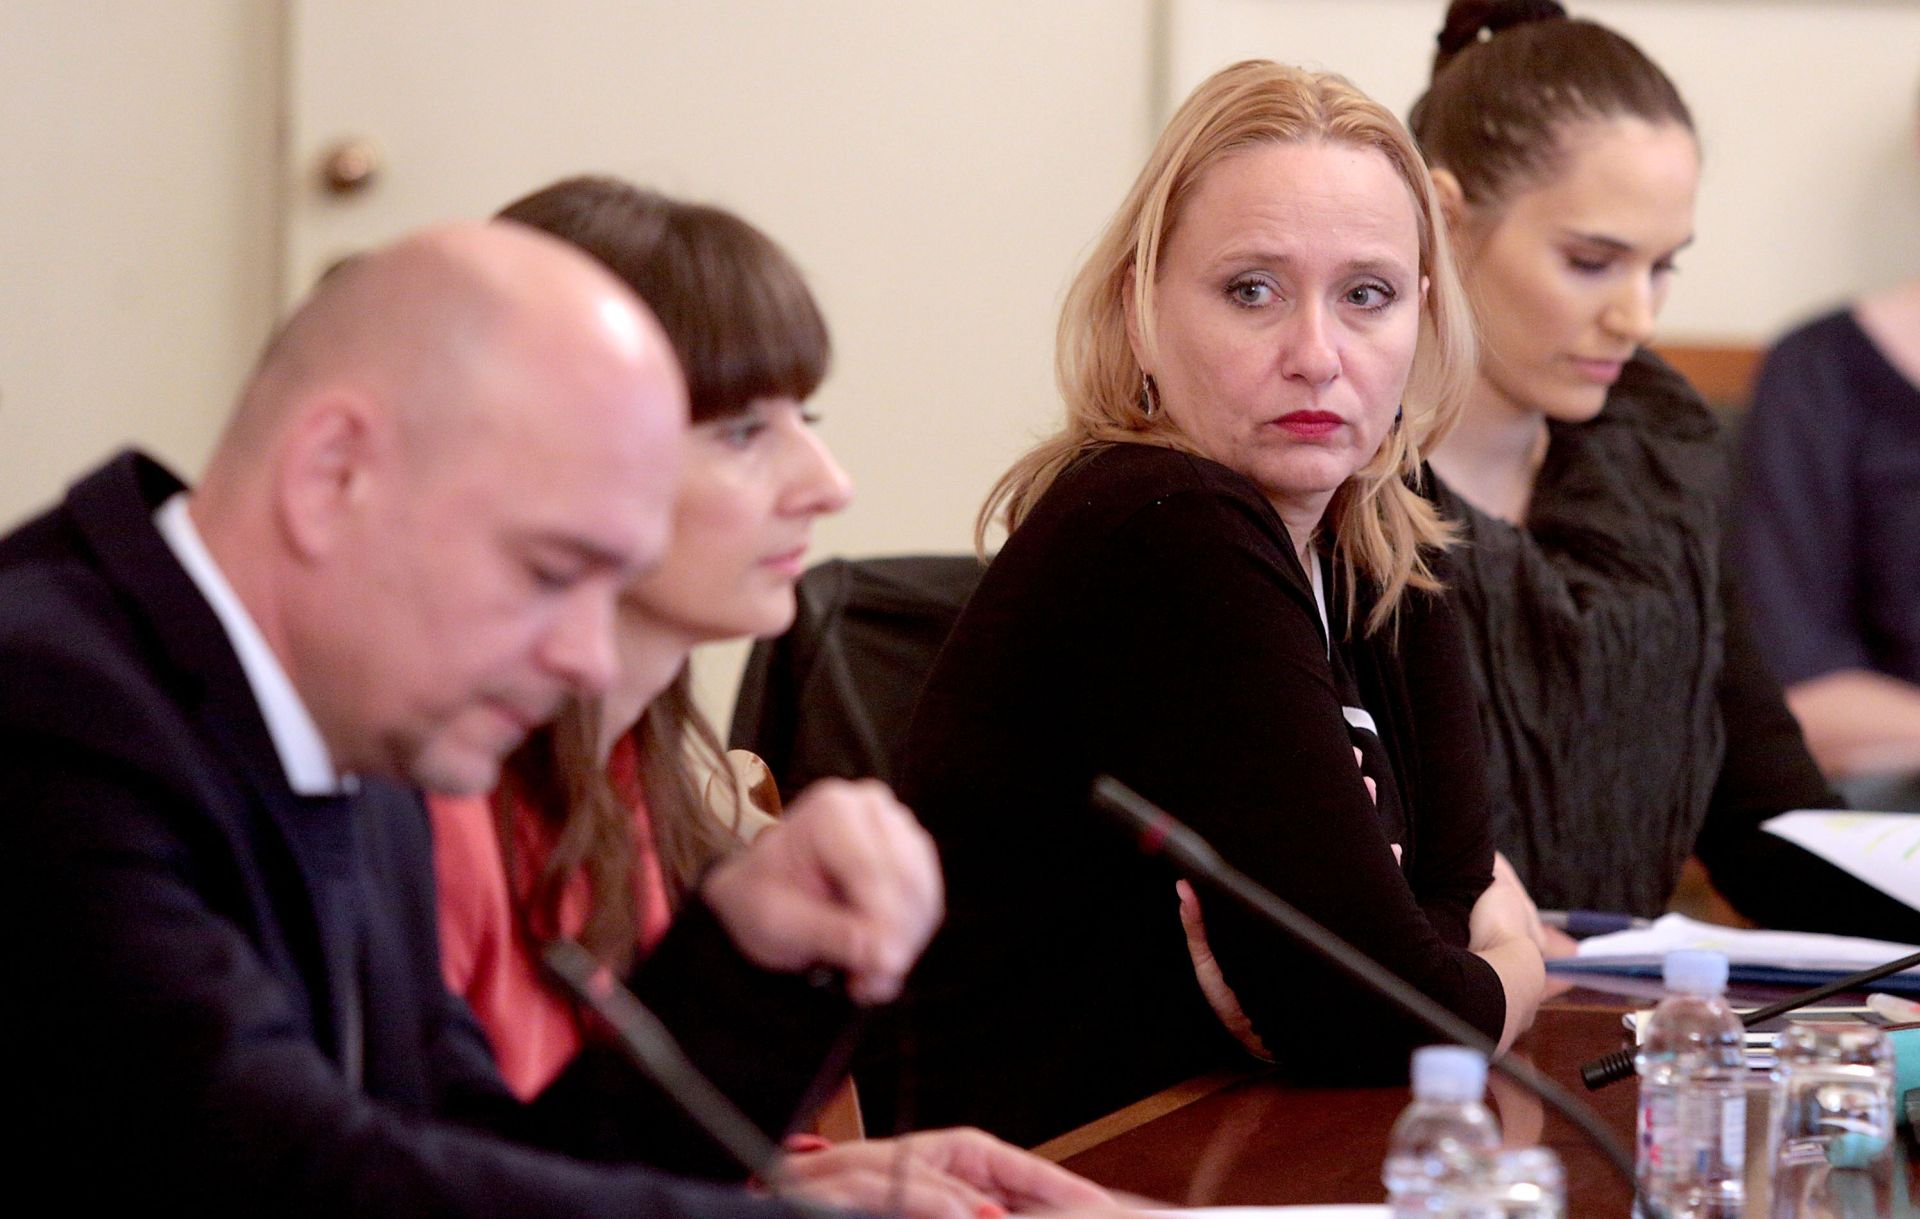 20.05.2016., Zagreb - Saborski odbor za zakonodavstvo raspravljao je na danasnjoj sjednici o izmjenama zakona o strancima. Lora Vidovic.
Photo: Patrik Macek/PIXSELL